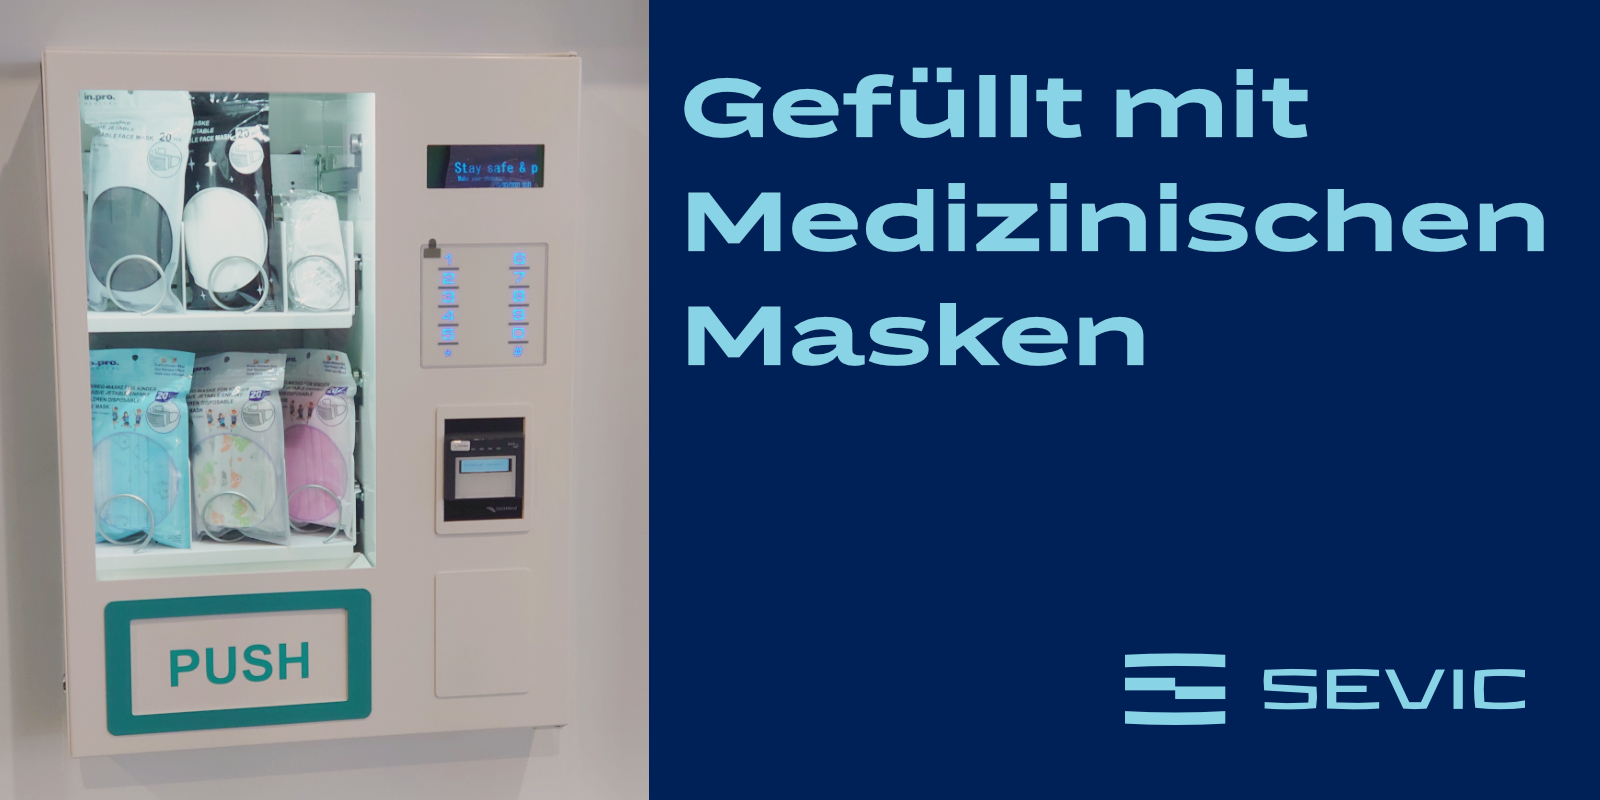 Verkaufsautomat mit Masken Maskenautomat Automat 